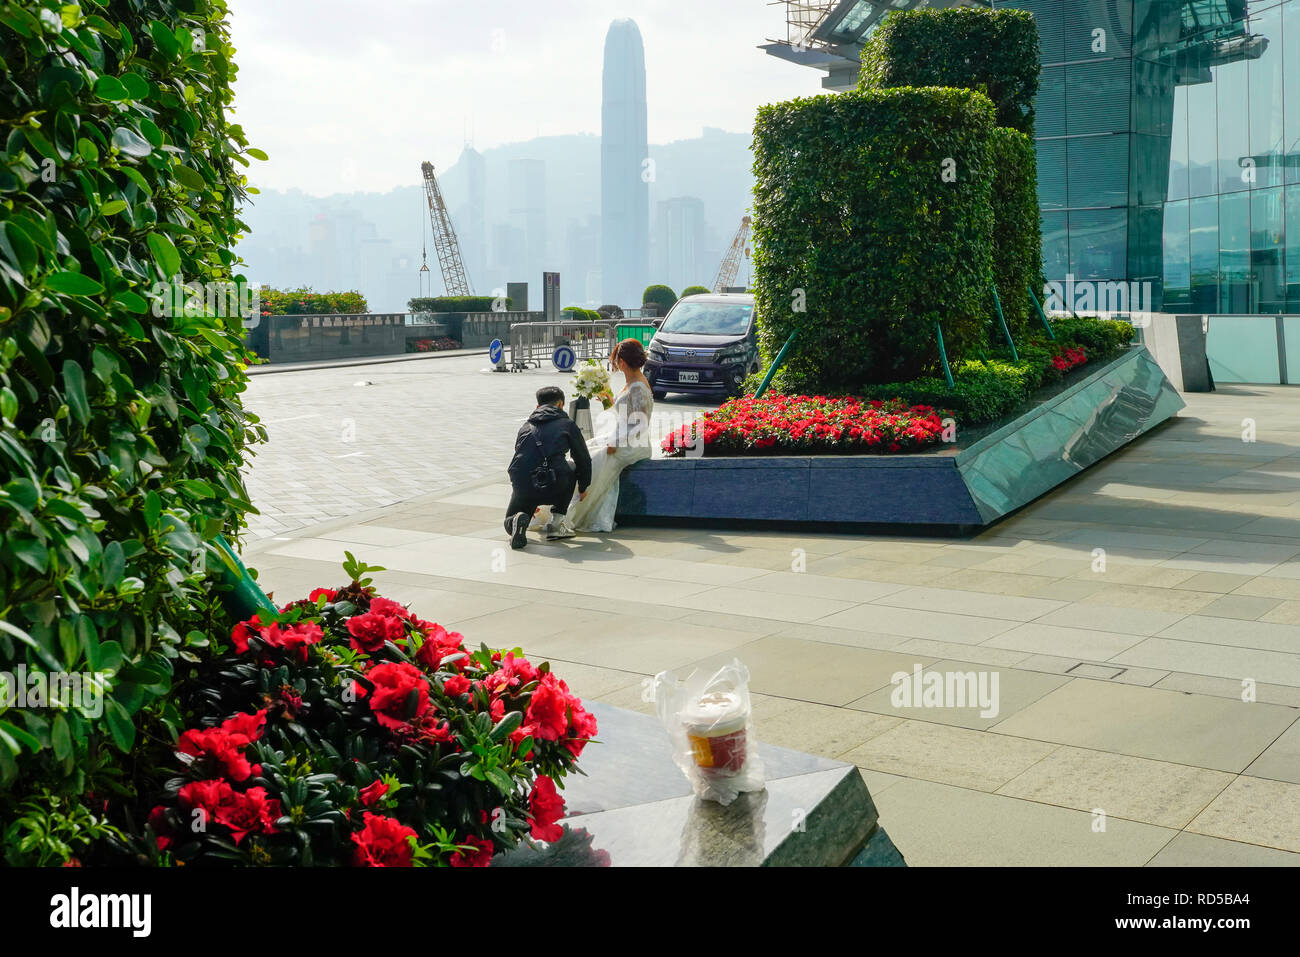 Fotograf Fotografieren Hochzeit von ehepaar am Union Square außerhalb Ritz Carlton in Hongkong, China. Stockfoto